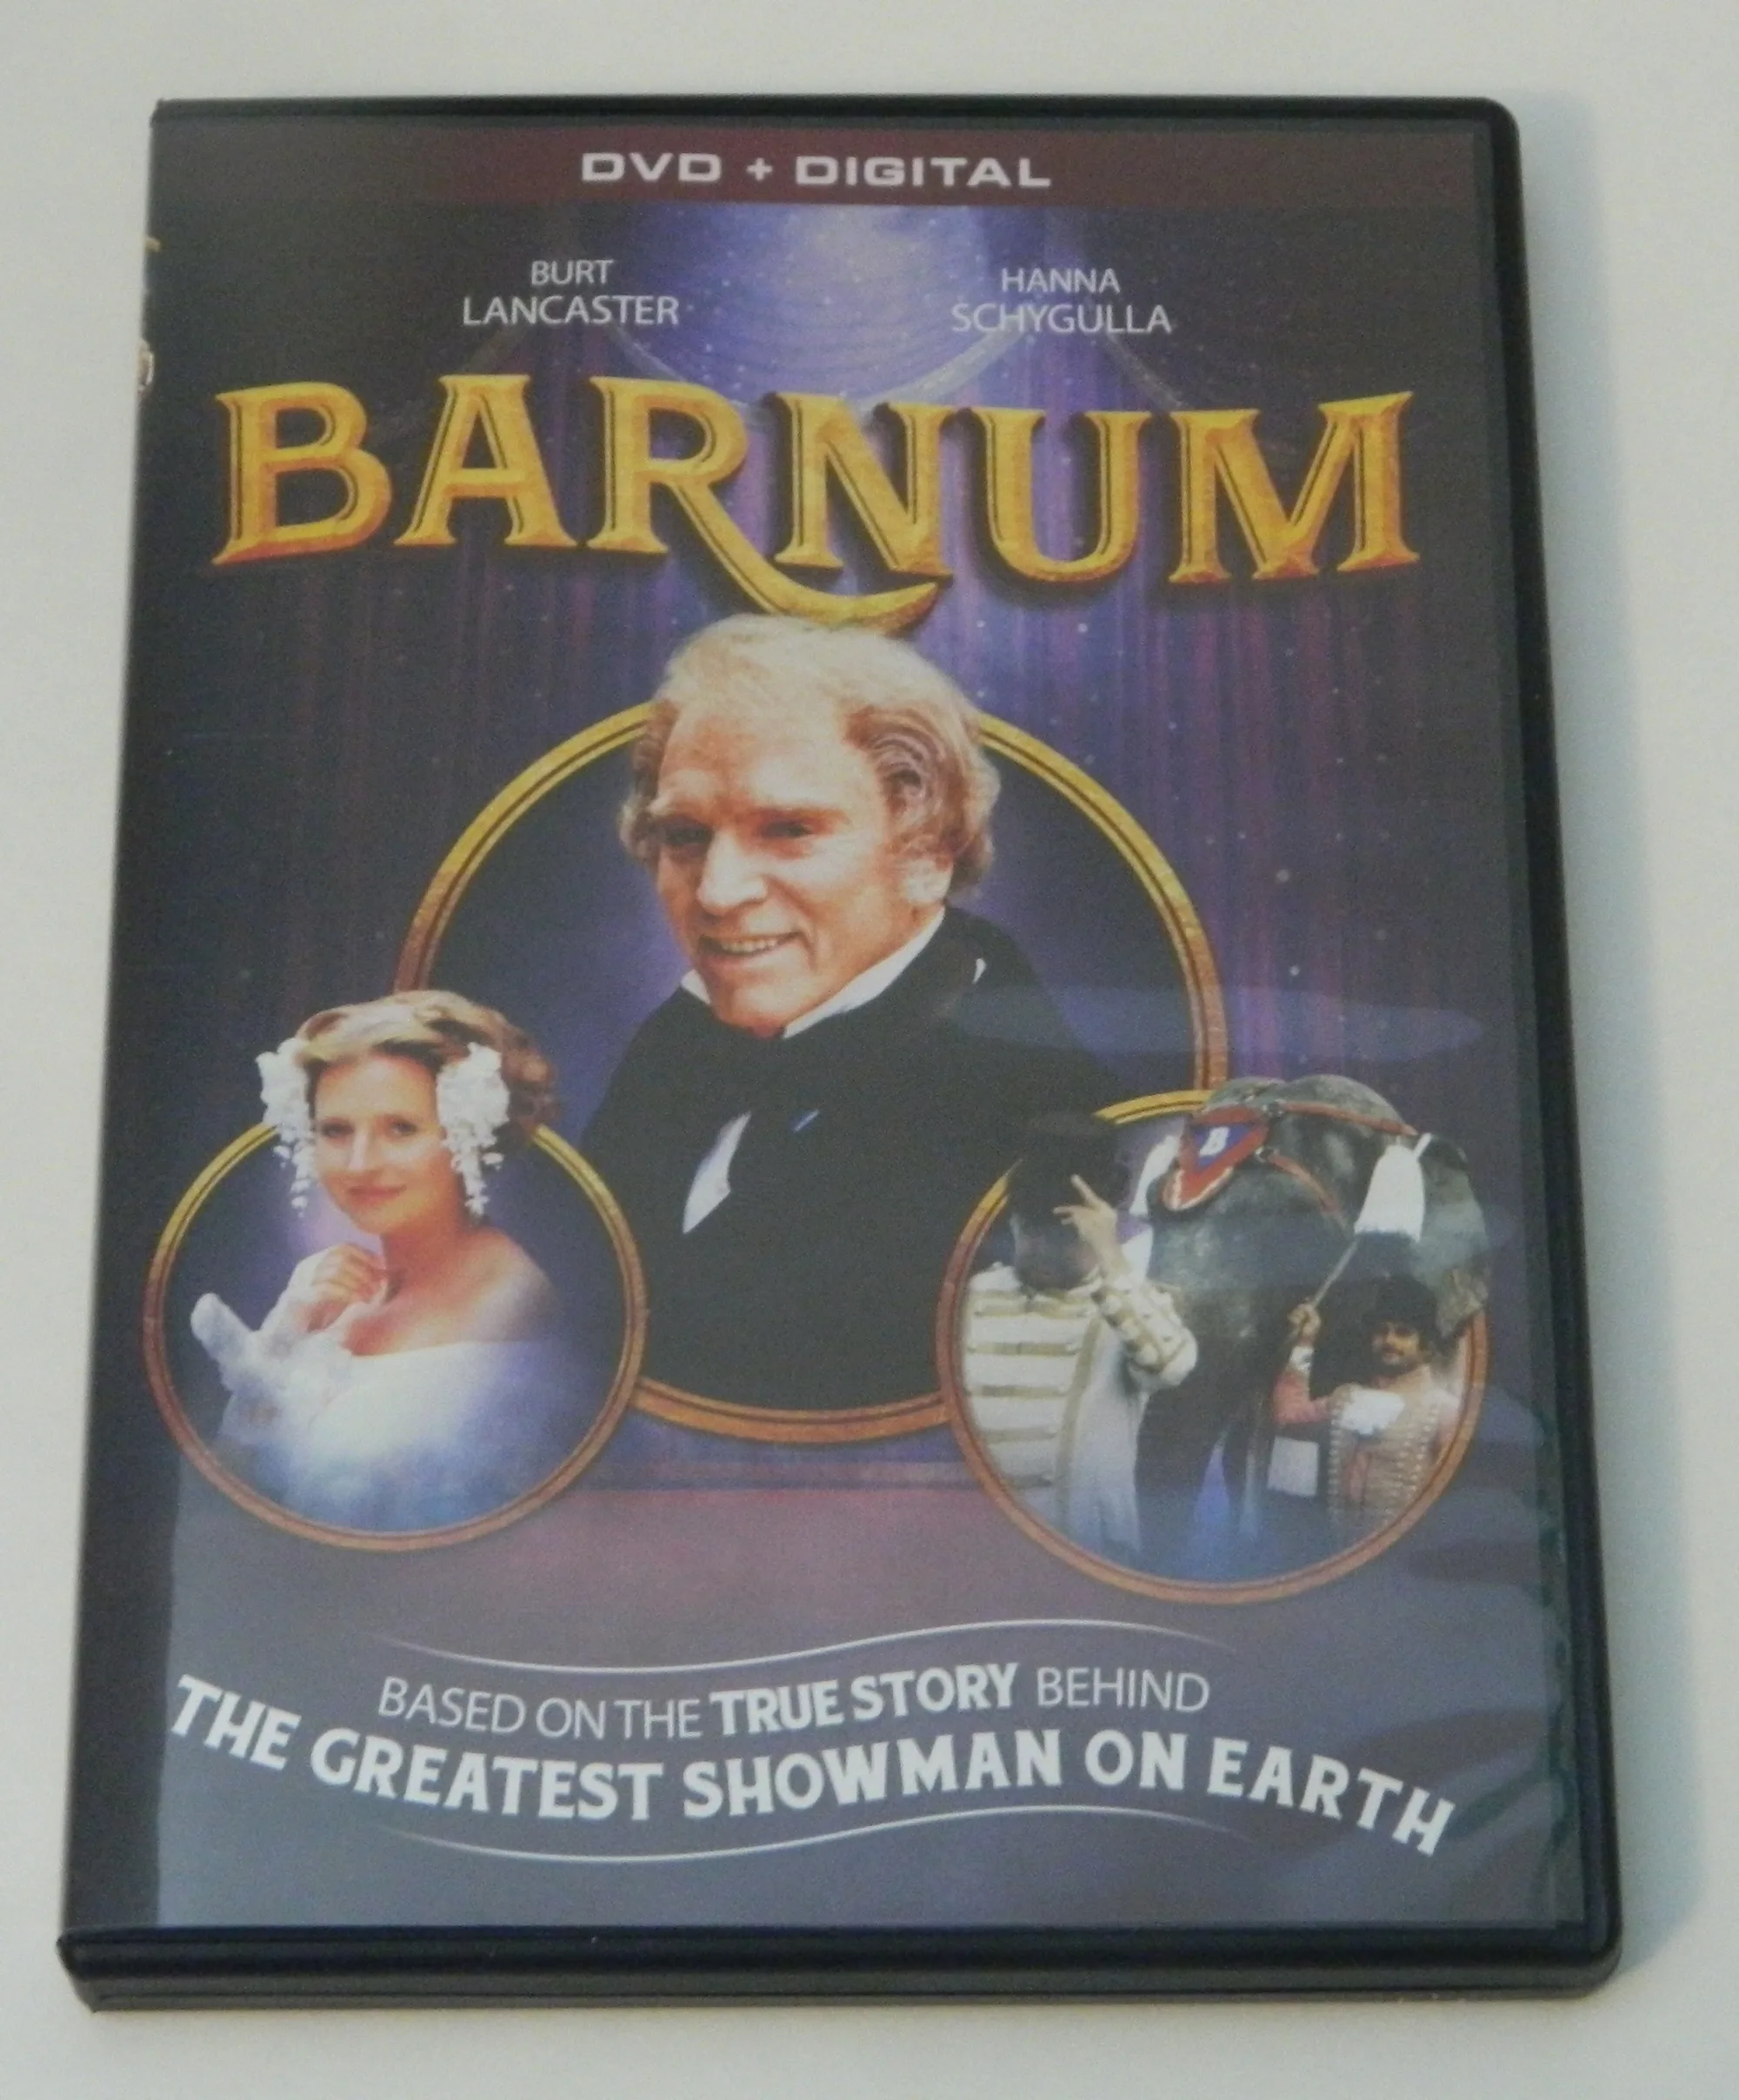 DVD for Barnum